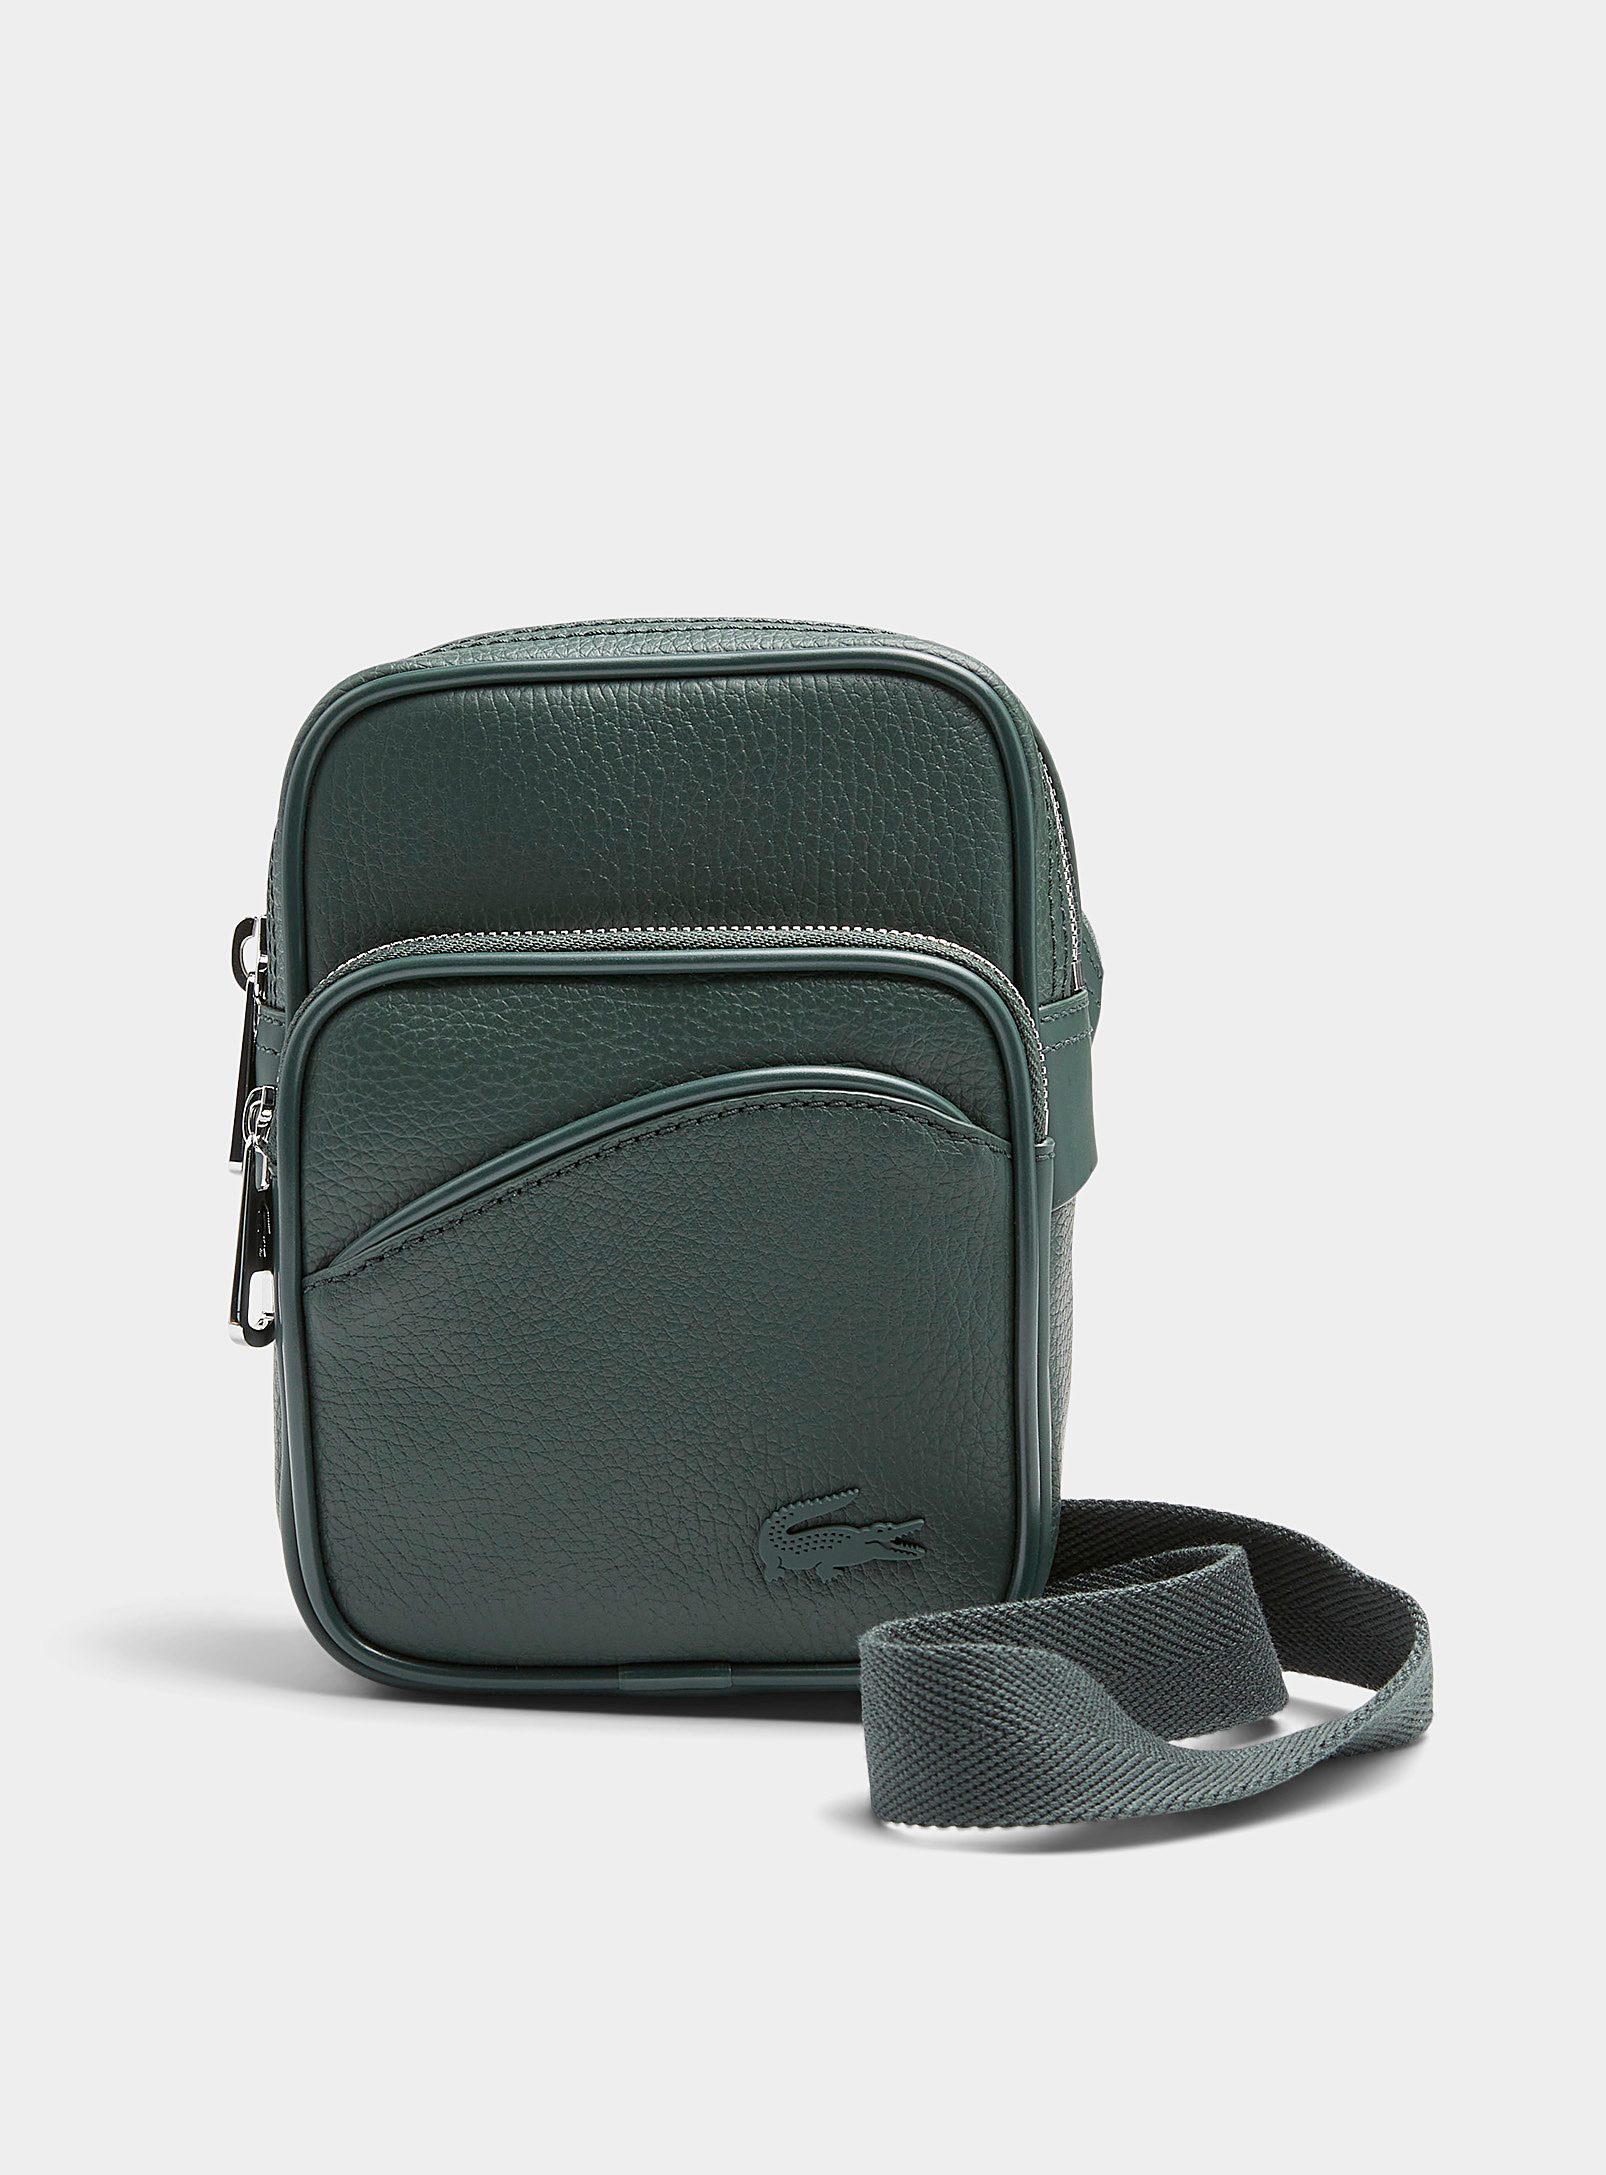 Lacoste - Men's Small monochrome shoulder bag